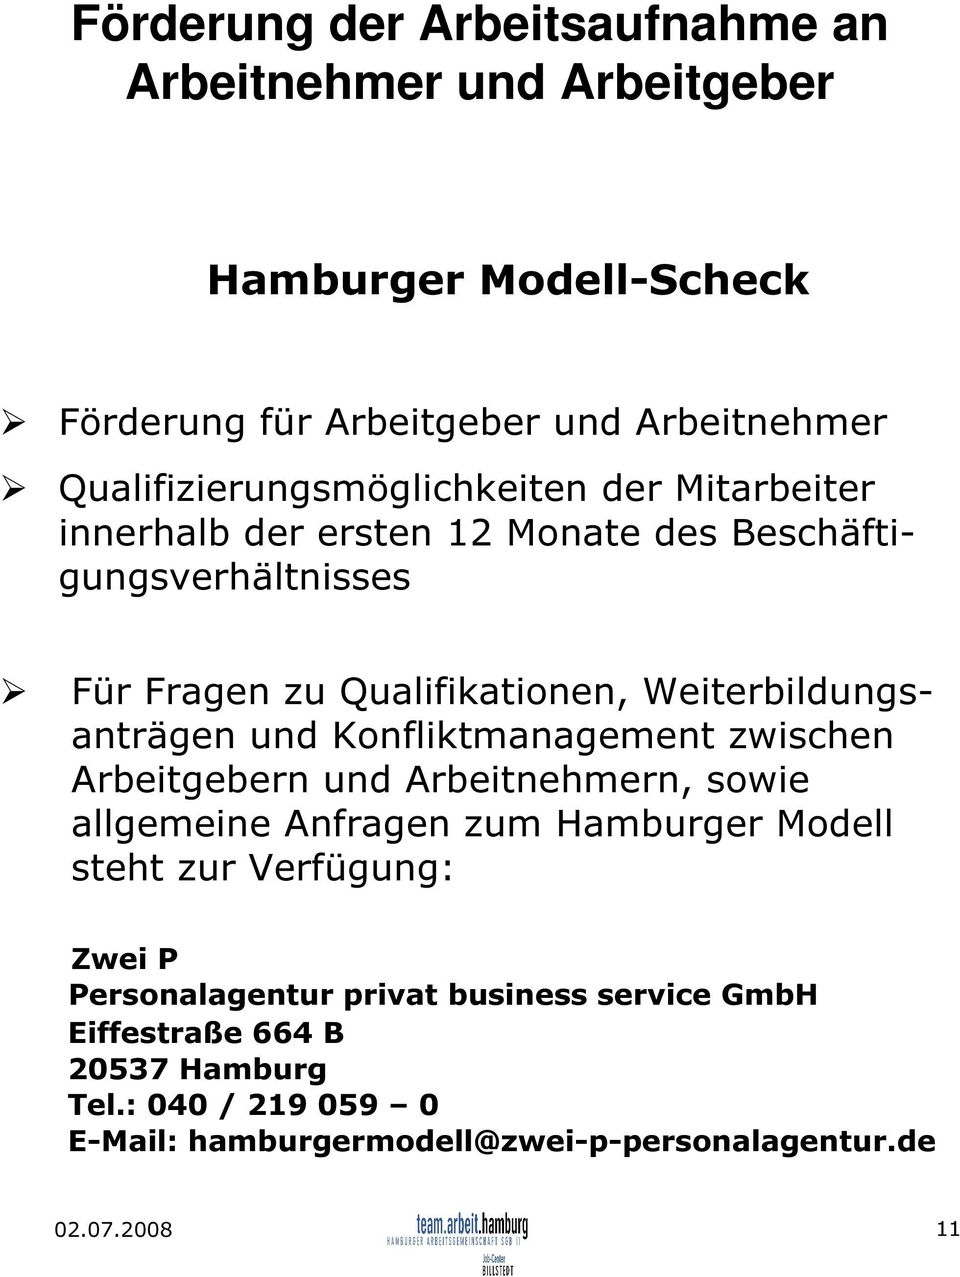 Weiterbildungsanträgen und Konfliktmanagement zwischen Arbeitgebern und Arbeitnehmern, sowie allgemeine Anfragen zum Hamburger Modell steht zur